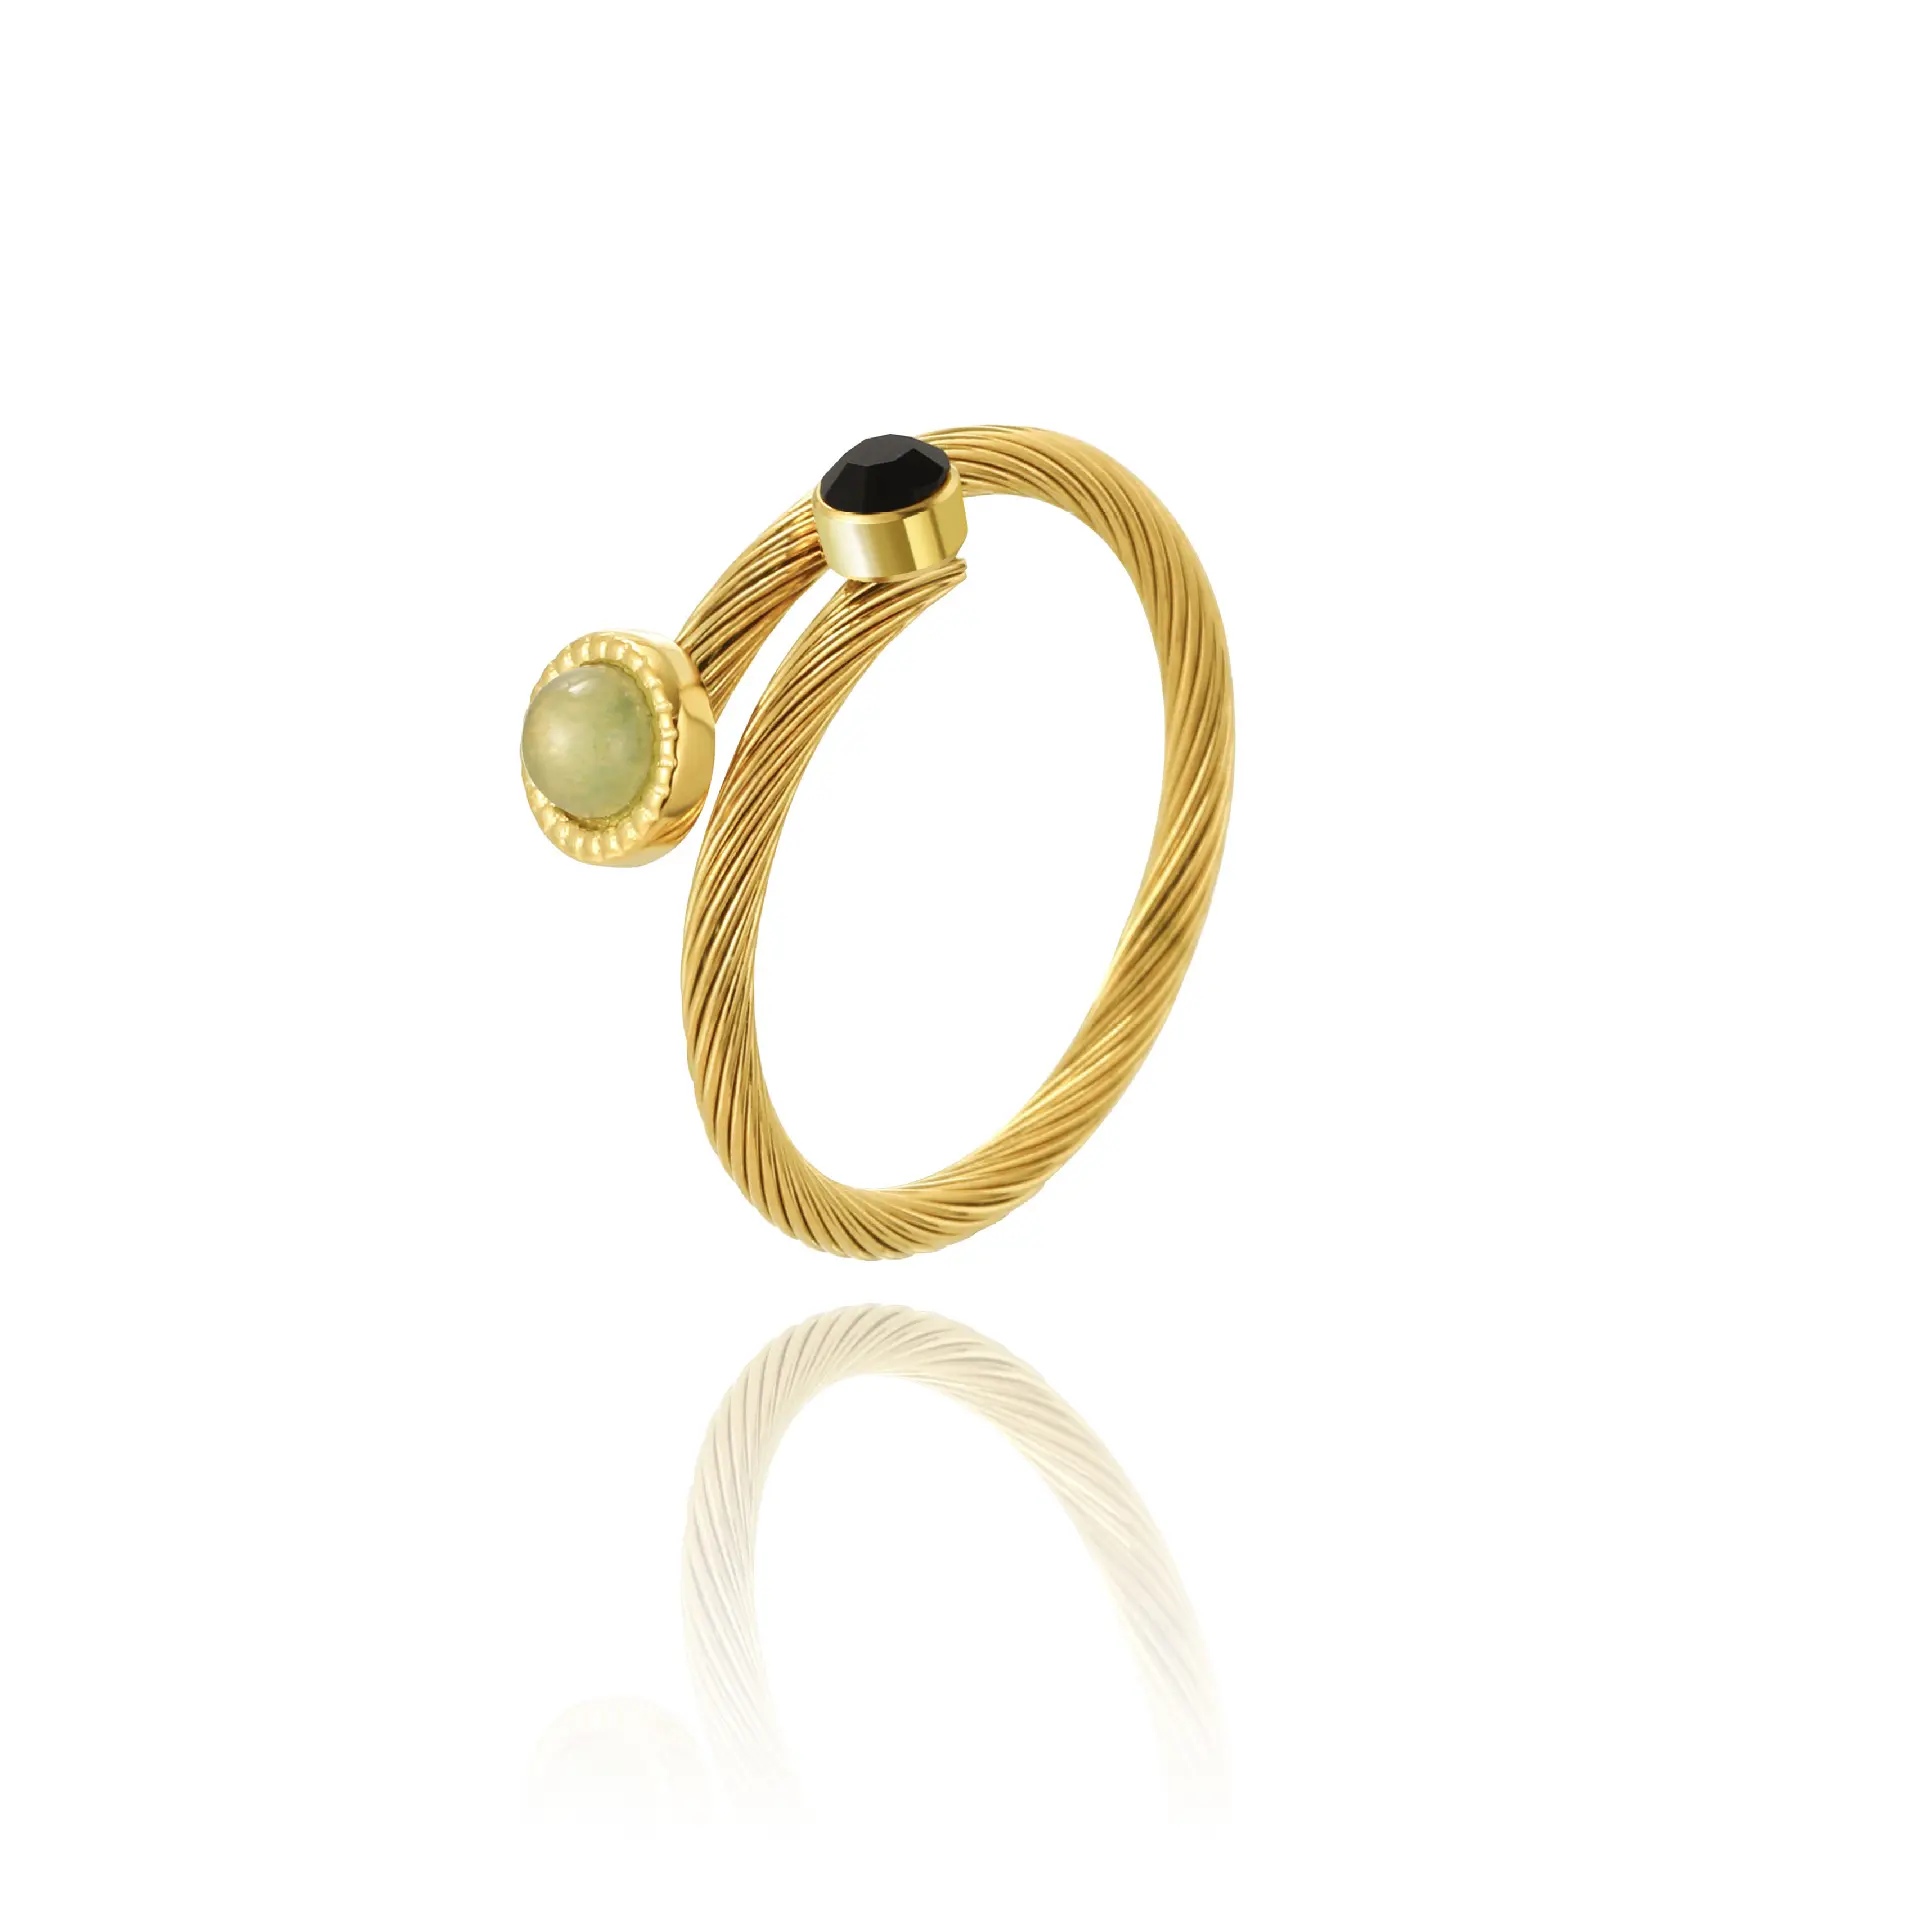 INS 18K vergoldet feminin modisch offen einstellbarer Edelstahlring Naturstein Draht Titan Stahl Naturstein Ring